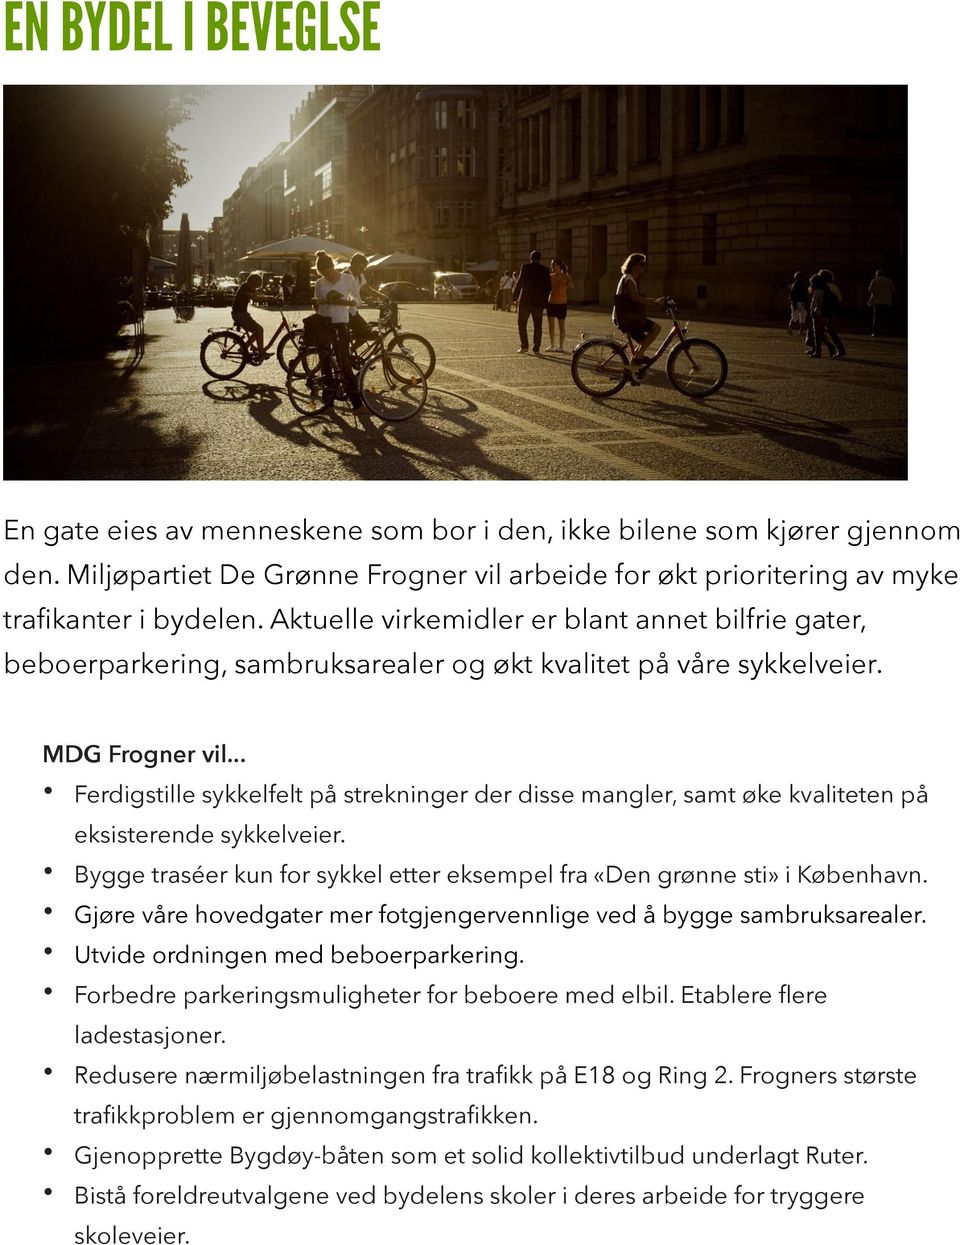 Ferdigstille sykkelfelt på strekninger der disse mangler, samt øke kvaliteten på eksisterende sykkelveier. Bygge traséer kun for sykkel etter eksempel fra «Den grønne sti» i København.